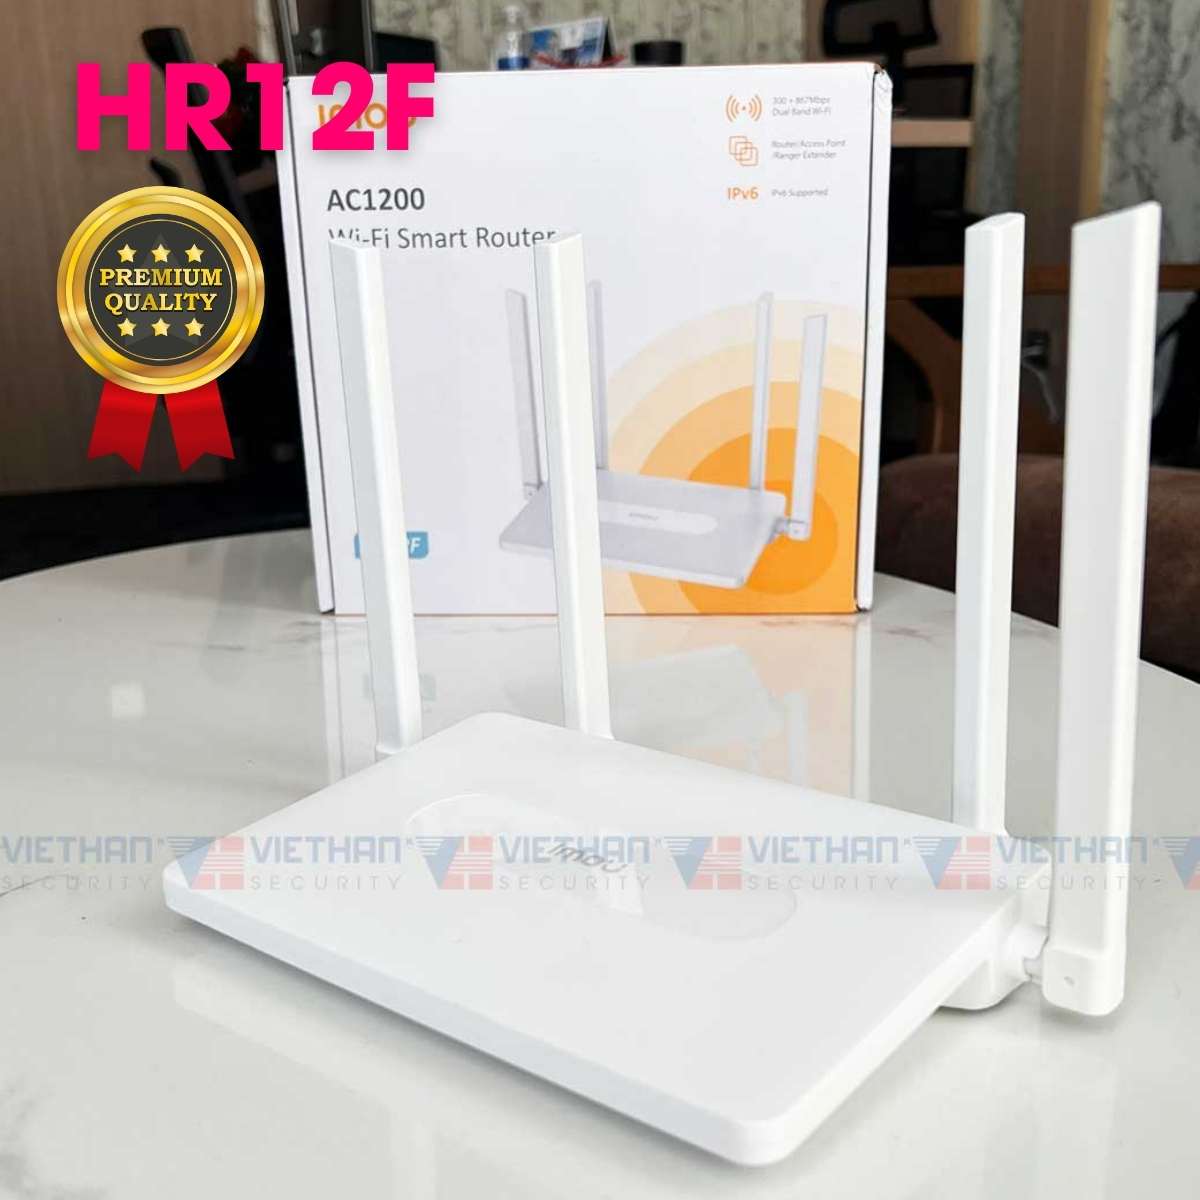 Bộ phát sóng wifi Imou HR12F Quản lý app, AC1200 wifi smart Router, repeater thu sóng wifi khác phát lại